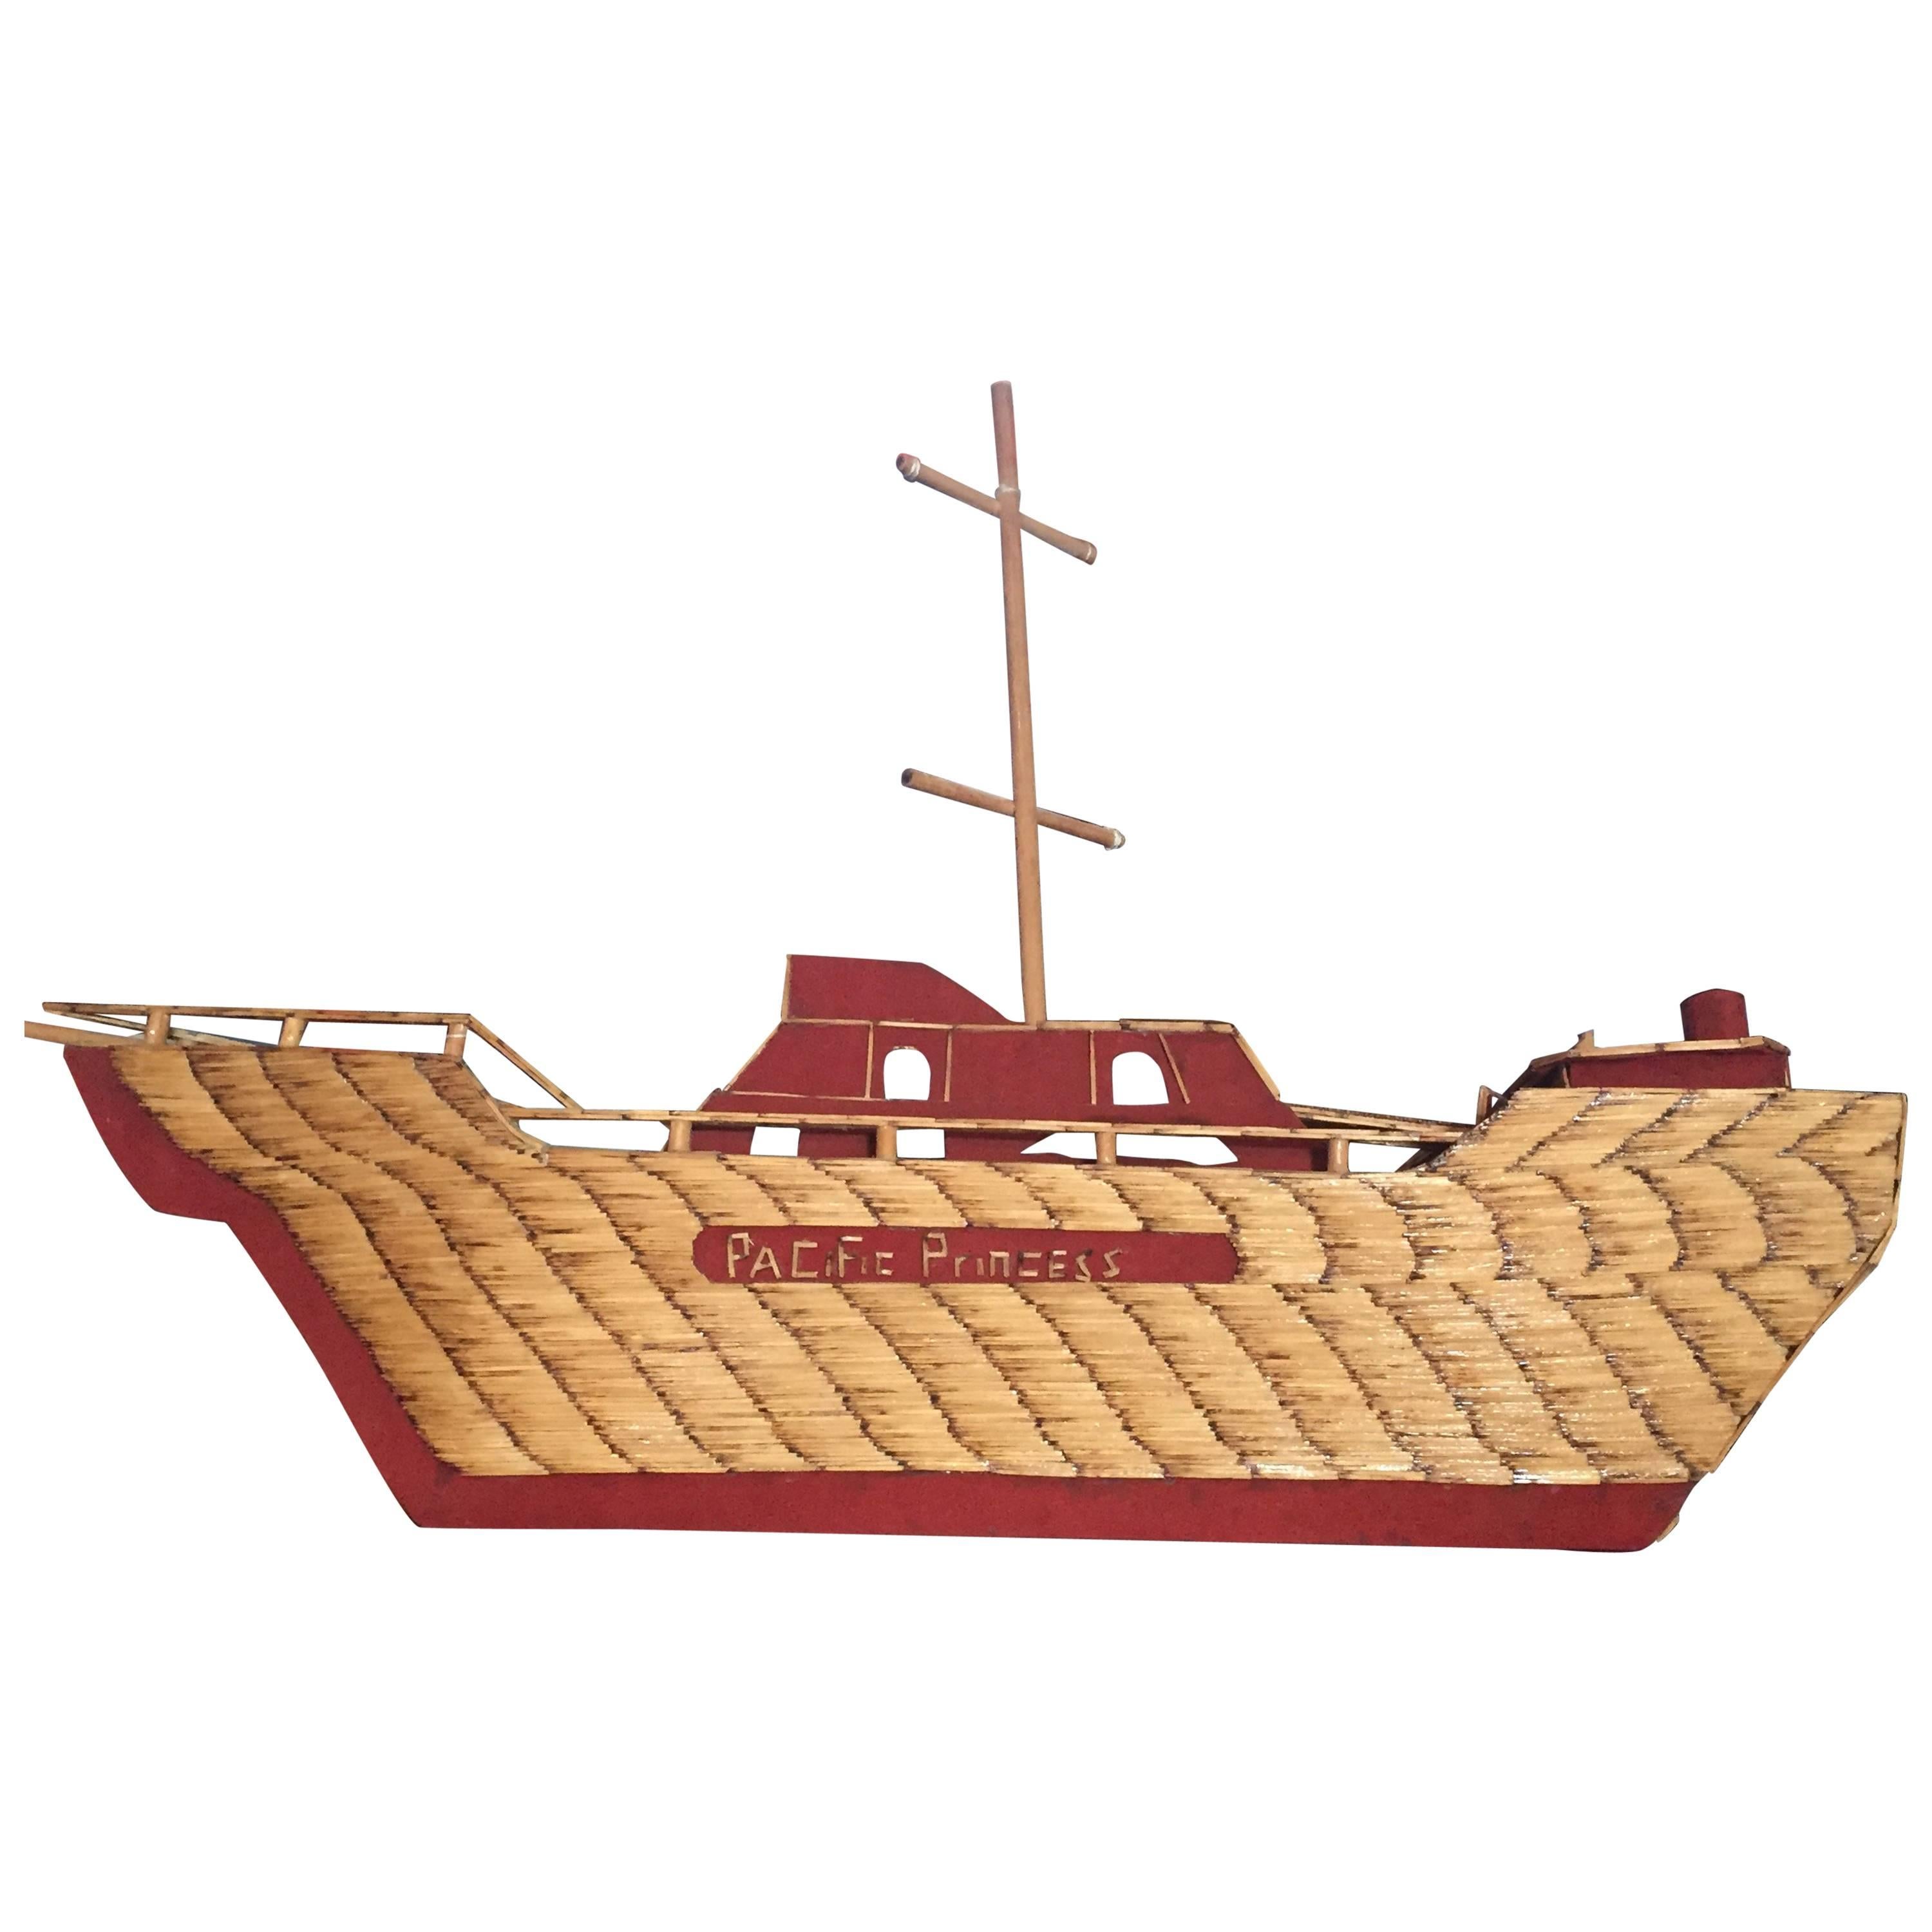 Folk Art Ship from World War-II